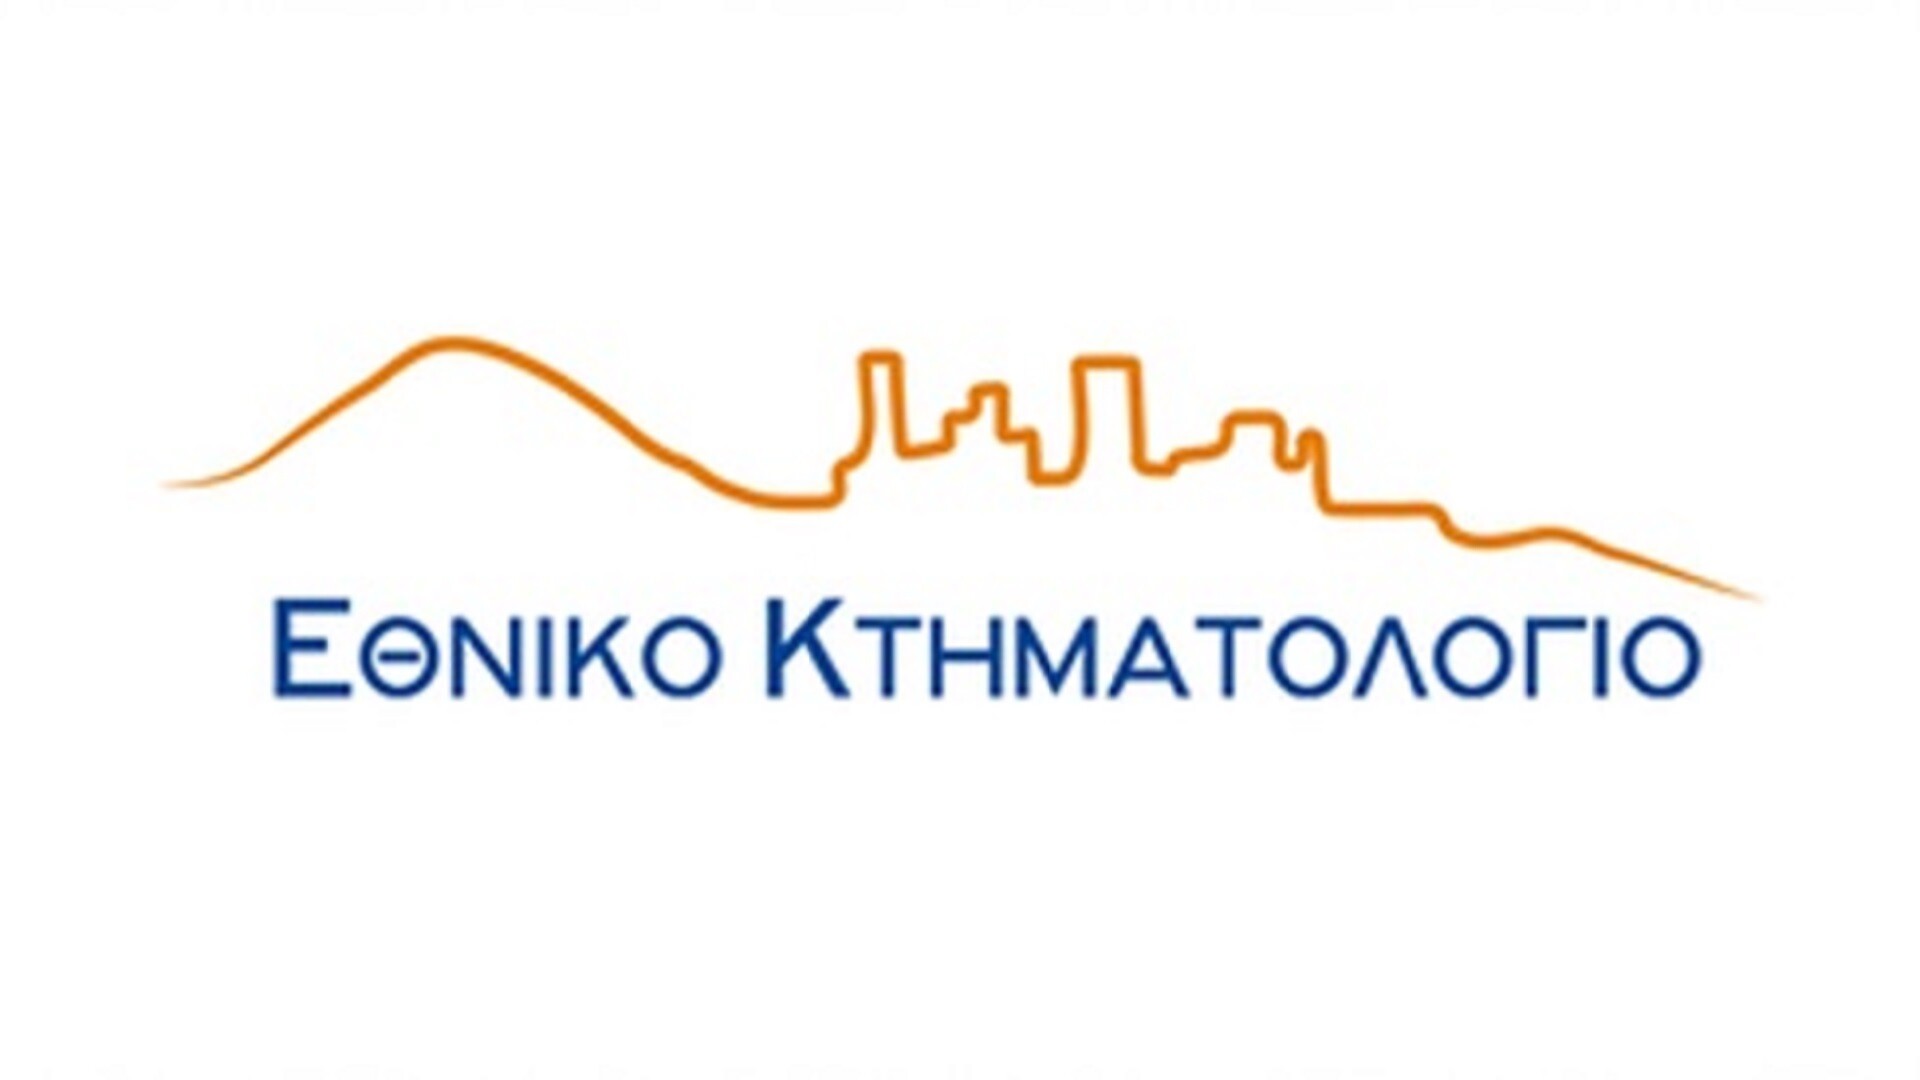 More information about "Δημοσιοποίηση των Εκθέσεων για τις αιτήσεις διόρθωσης κτηματολογικών στοιχείων των ακινήτων στην Περιφερειακή Ενότητα Θεσσαλονίκης"